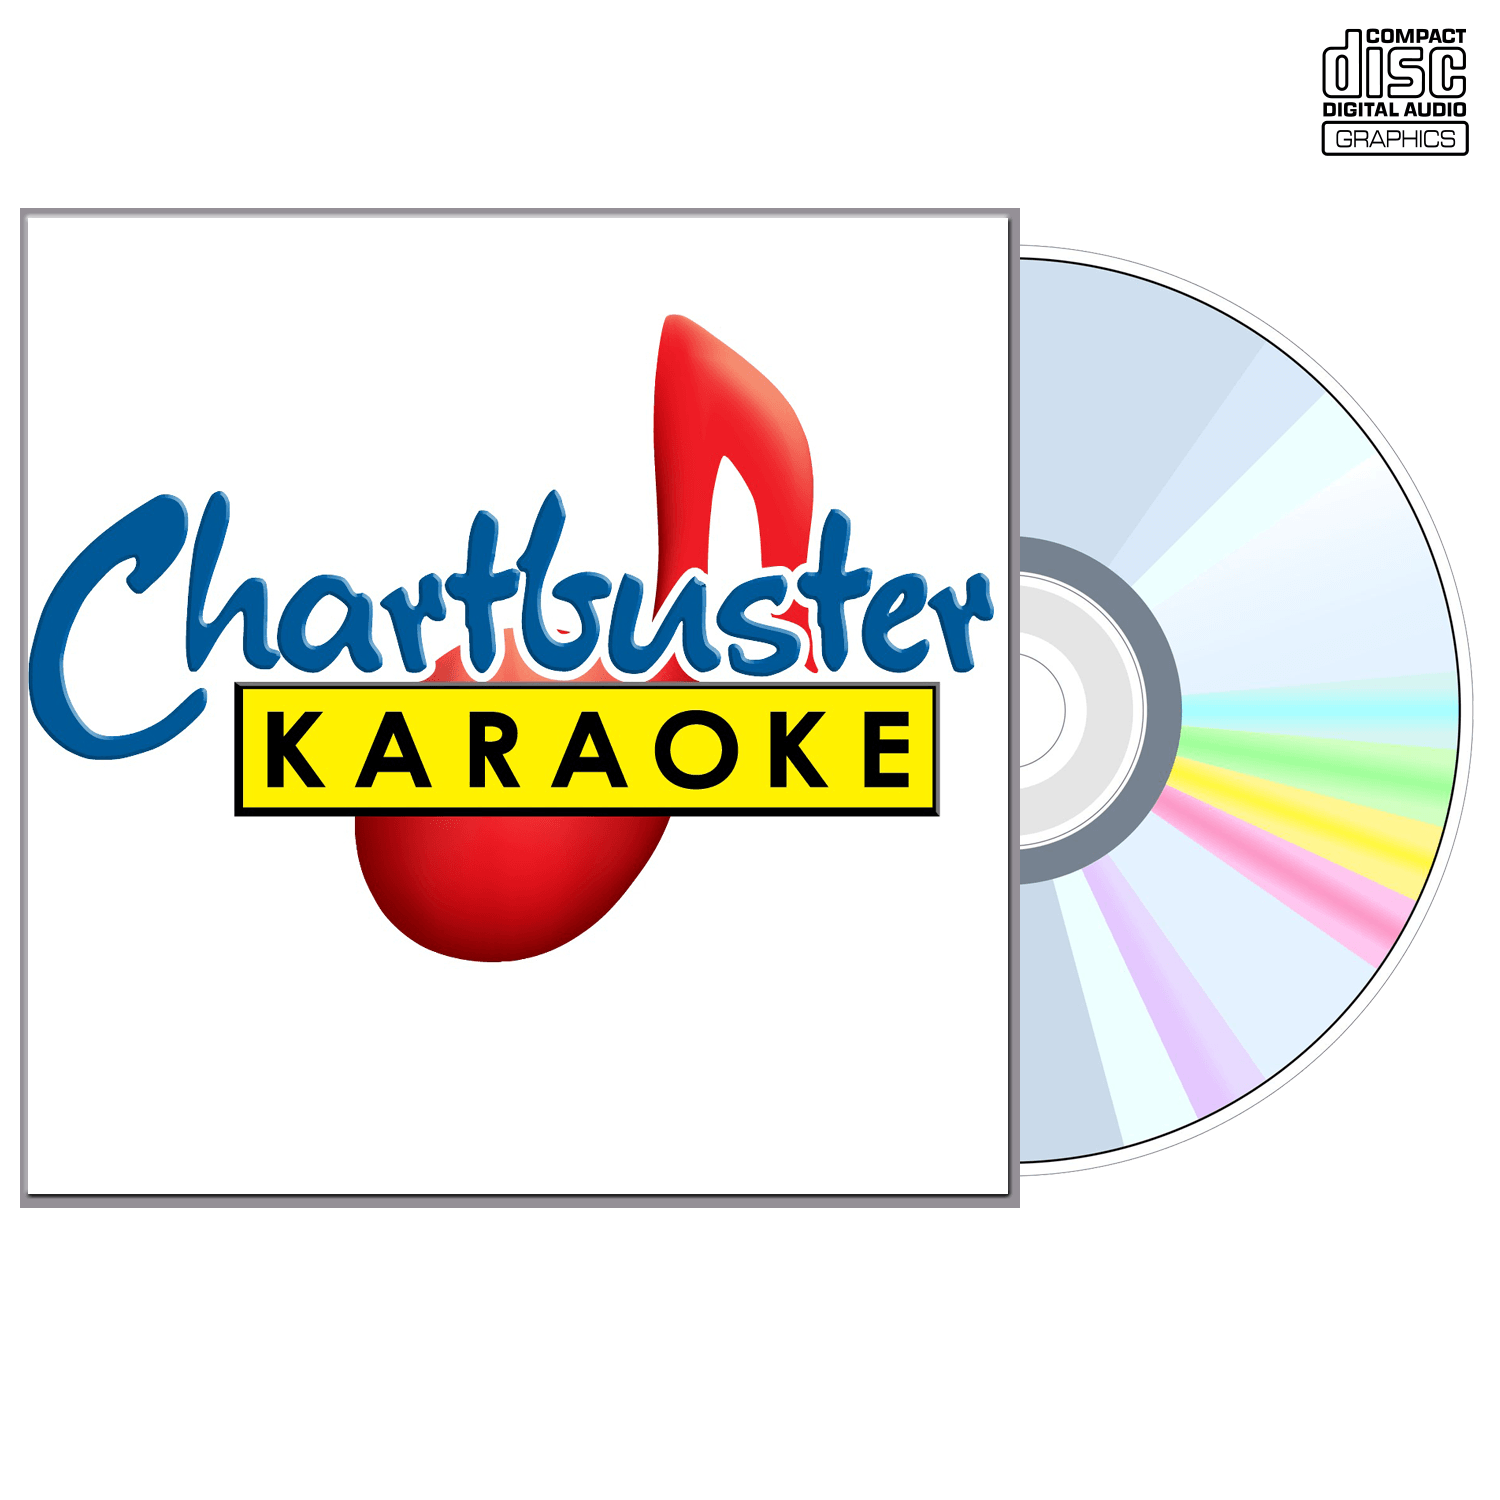 Adele - CD+G - Chartbuster Karaoke - Karaoke Home Entertainment